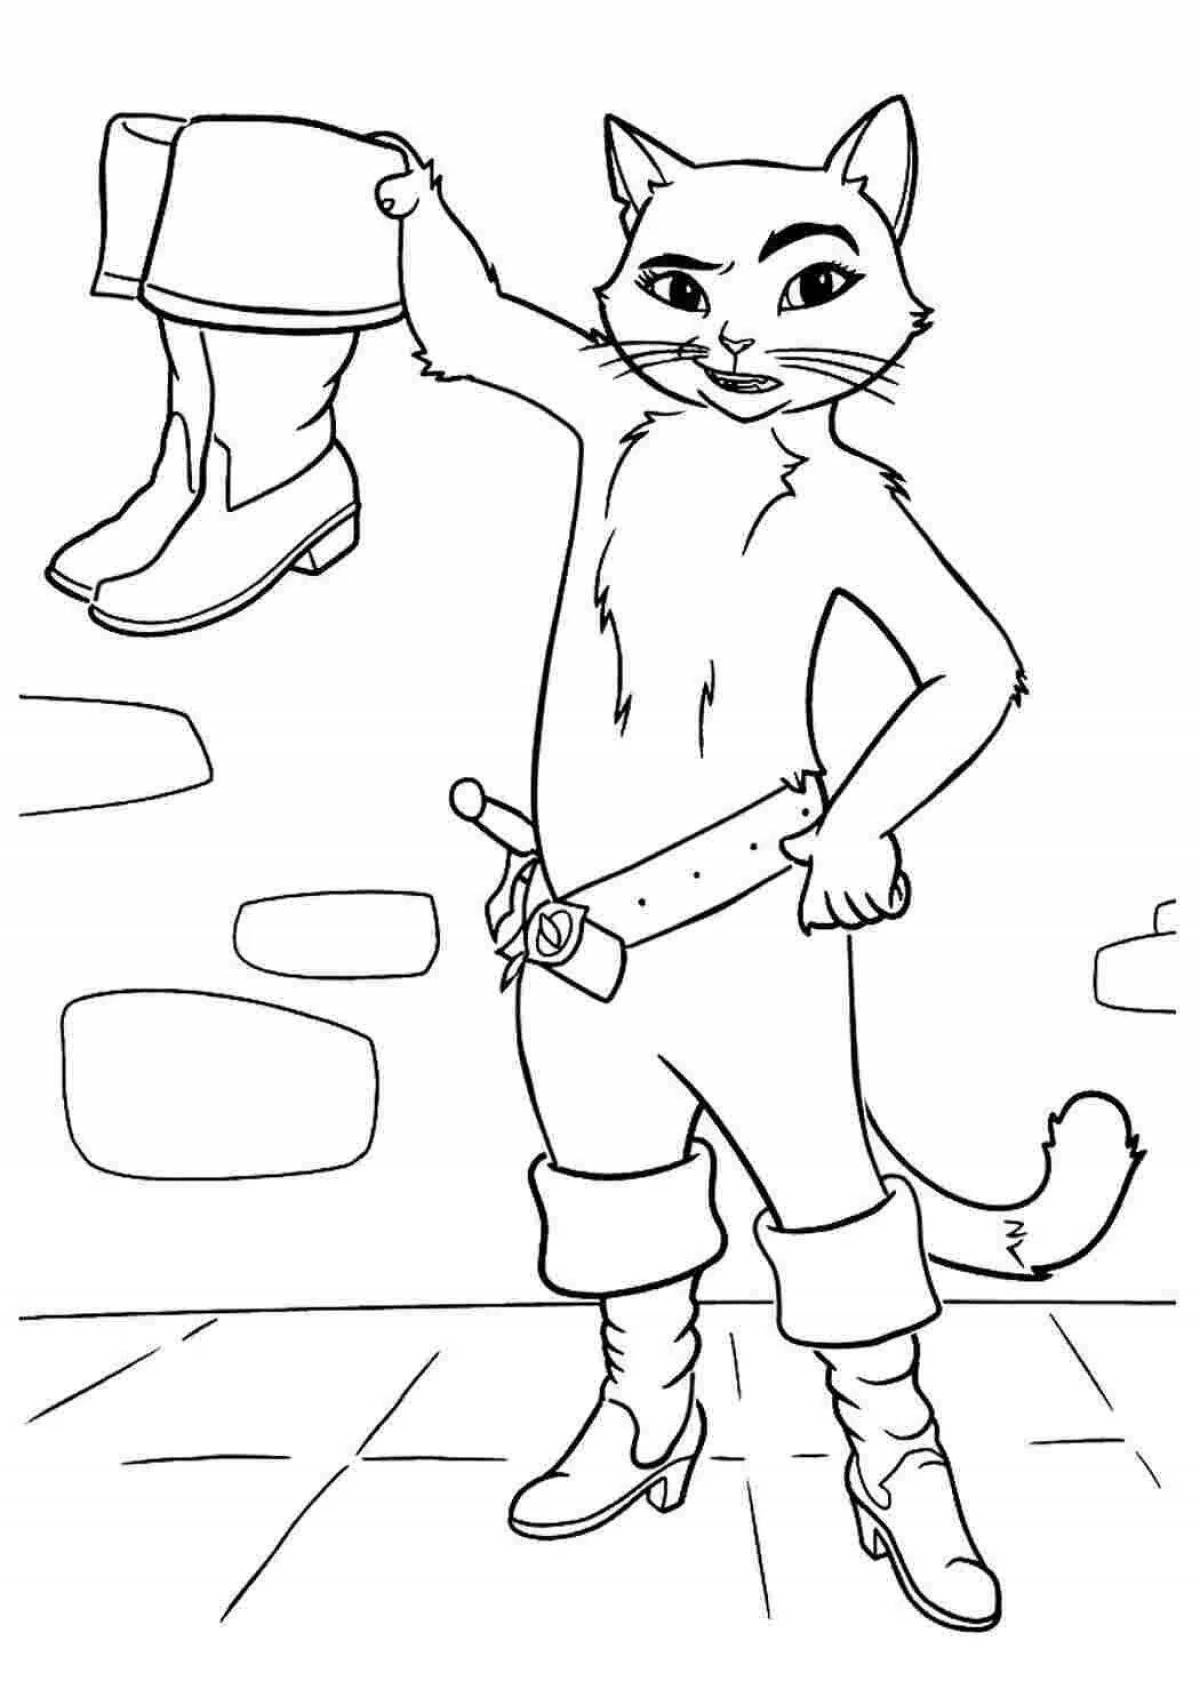 Как нарисовать кота в сапогах карандашом поэтапно